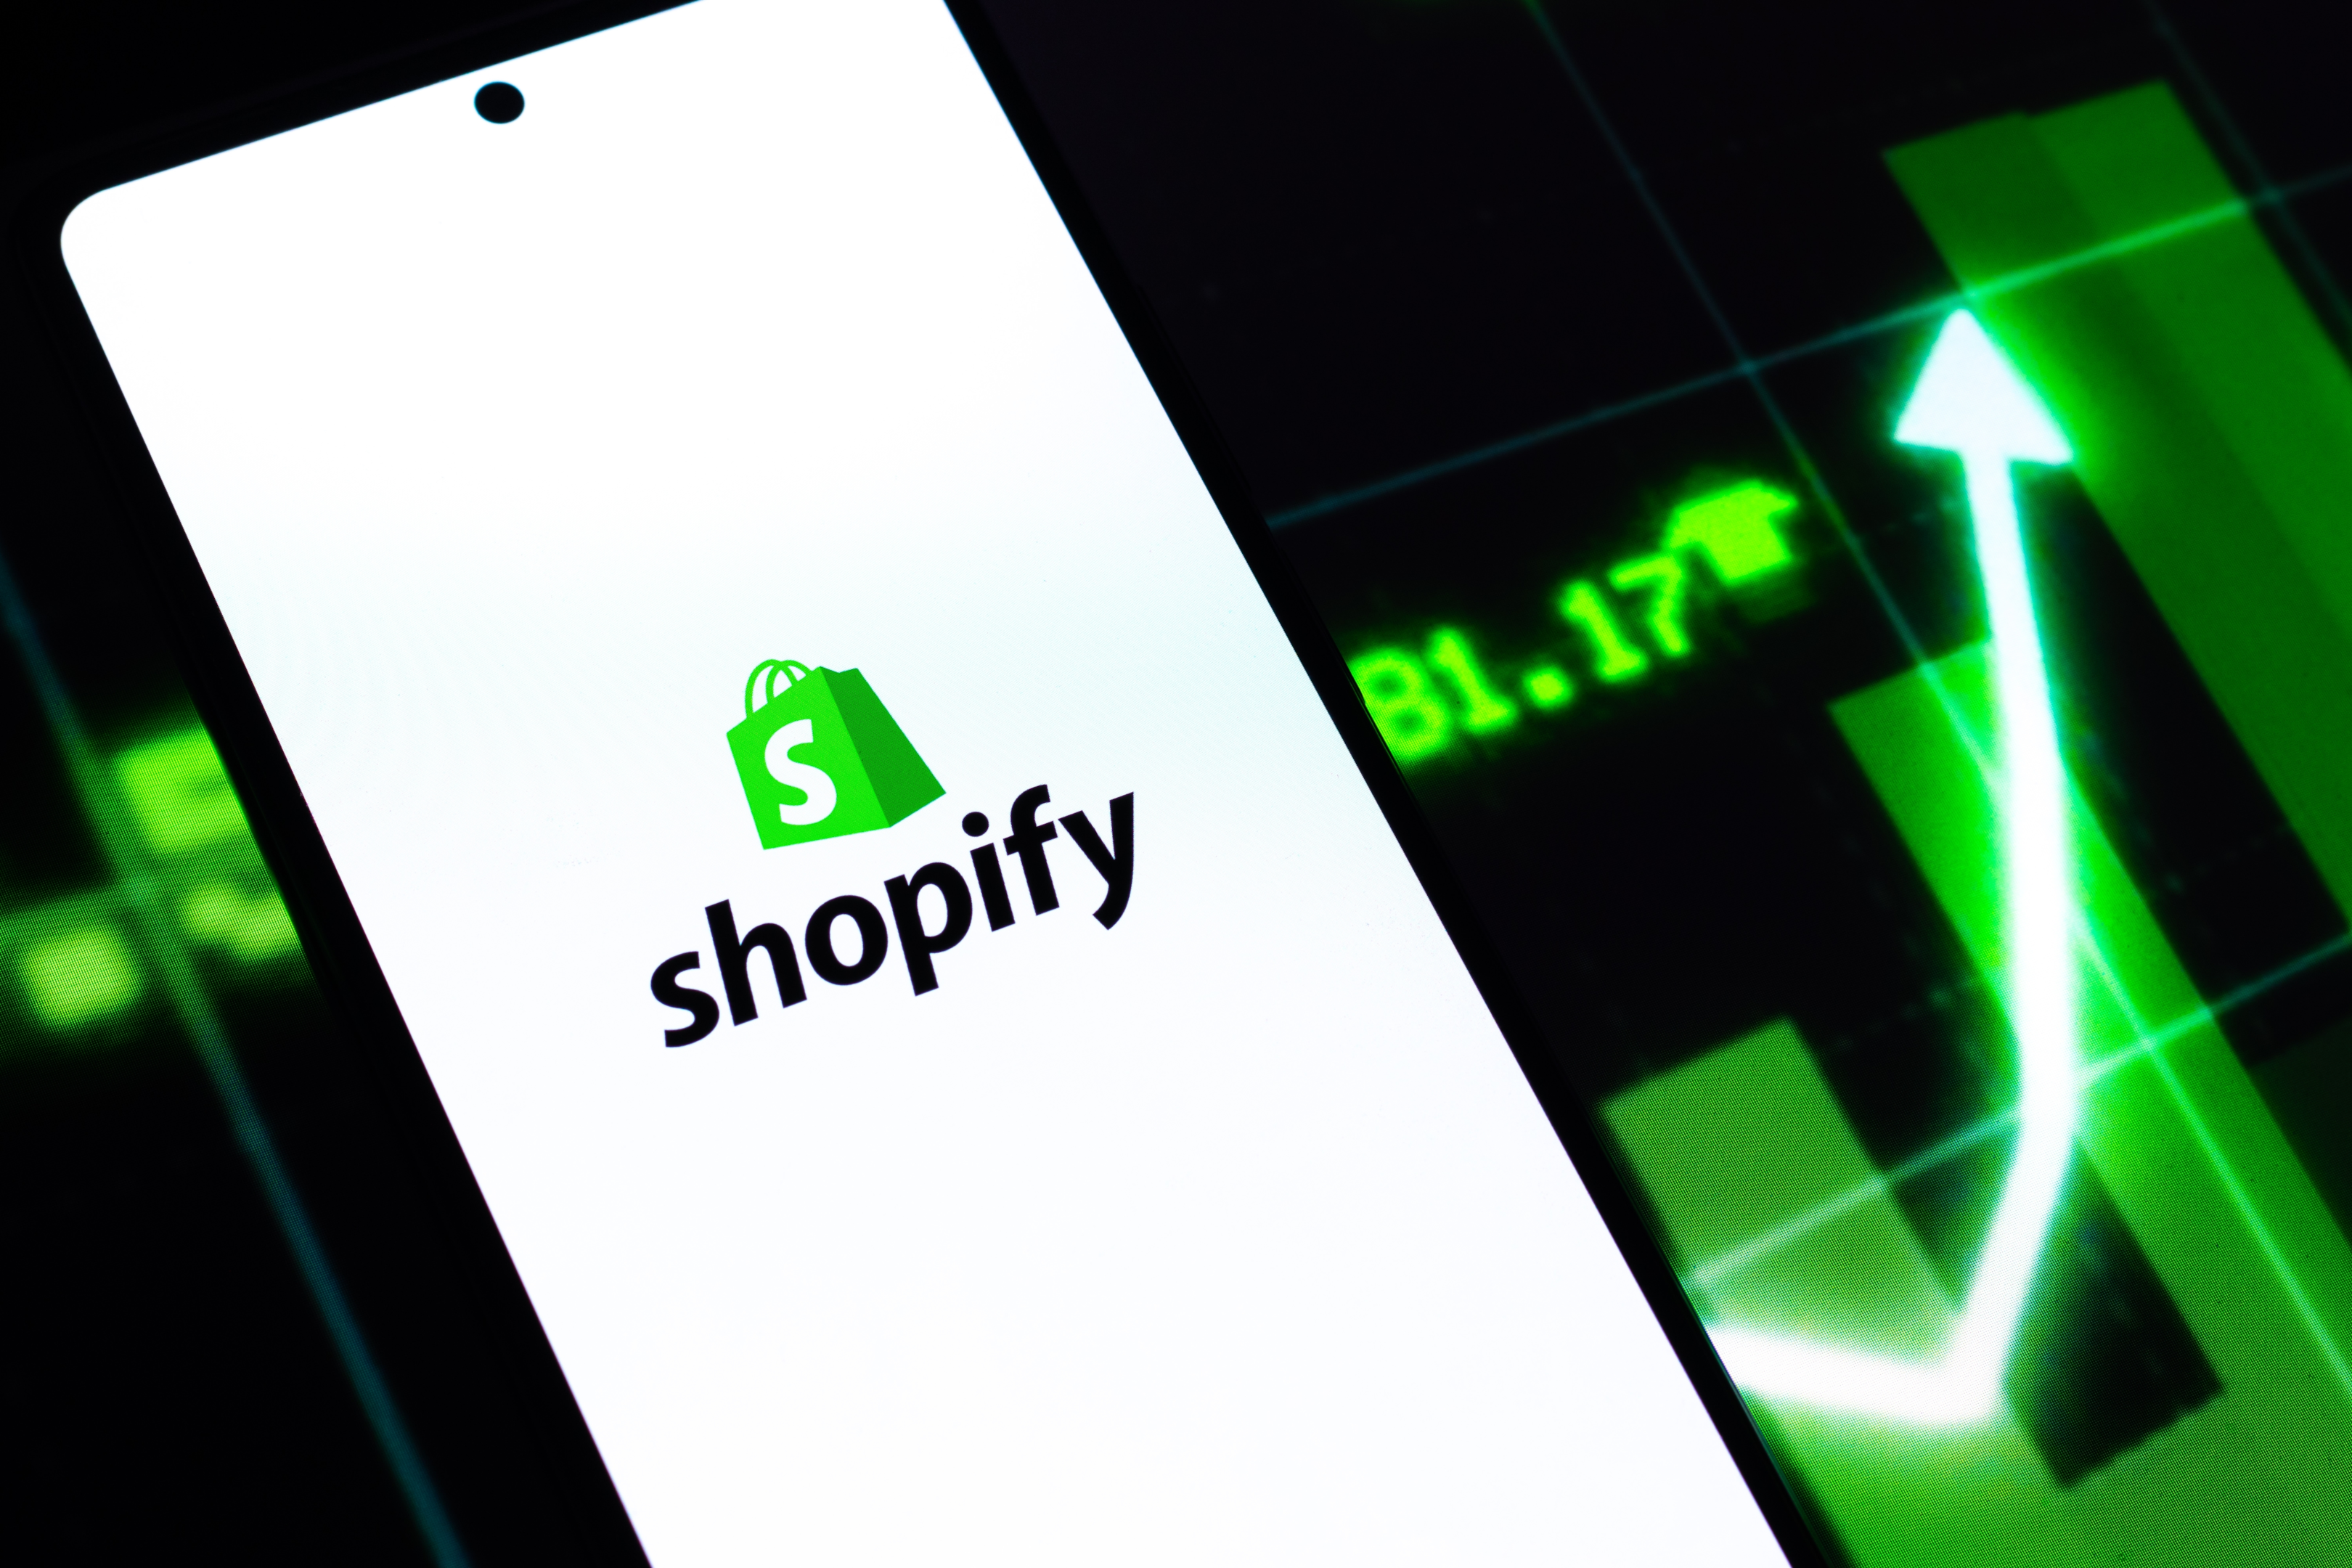 Shopify Seo Company How Do I Find A Reputable Shopify Seo Company?